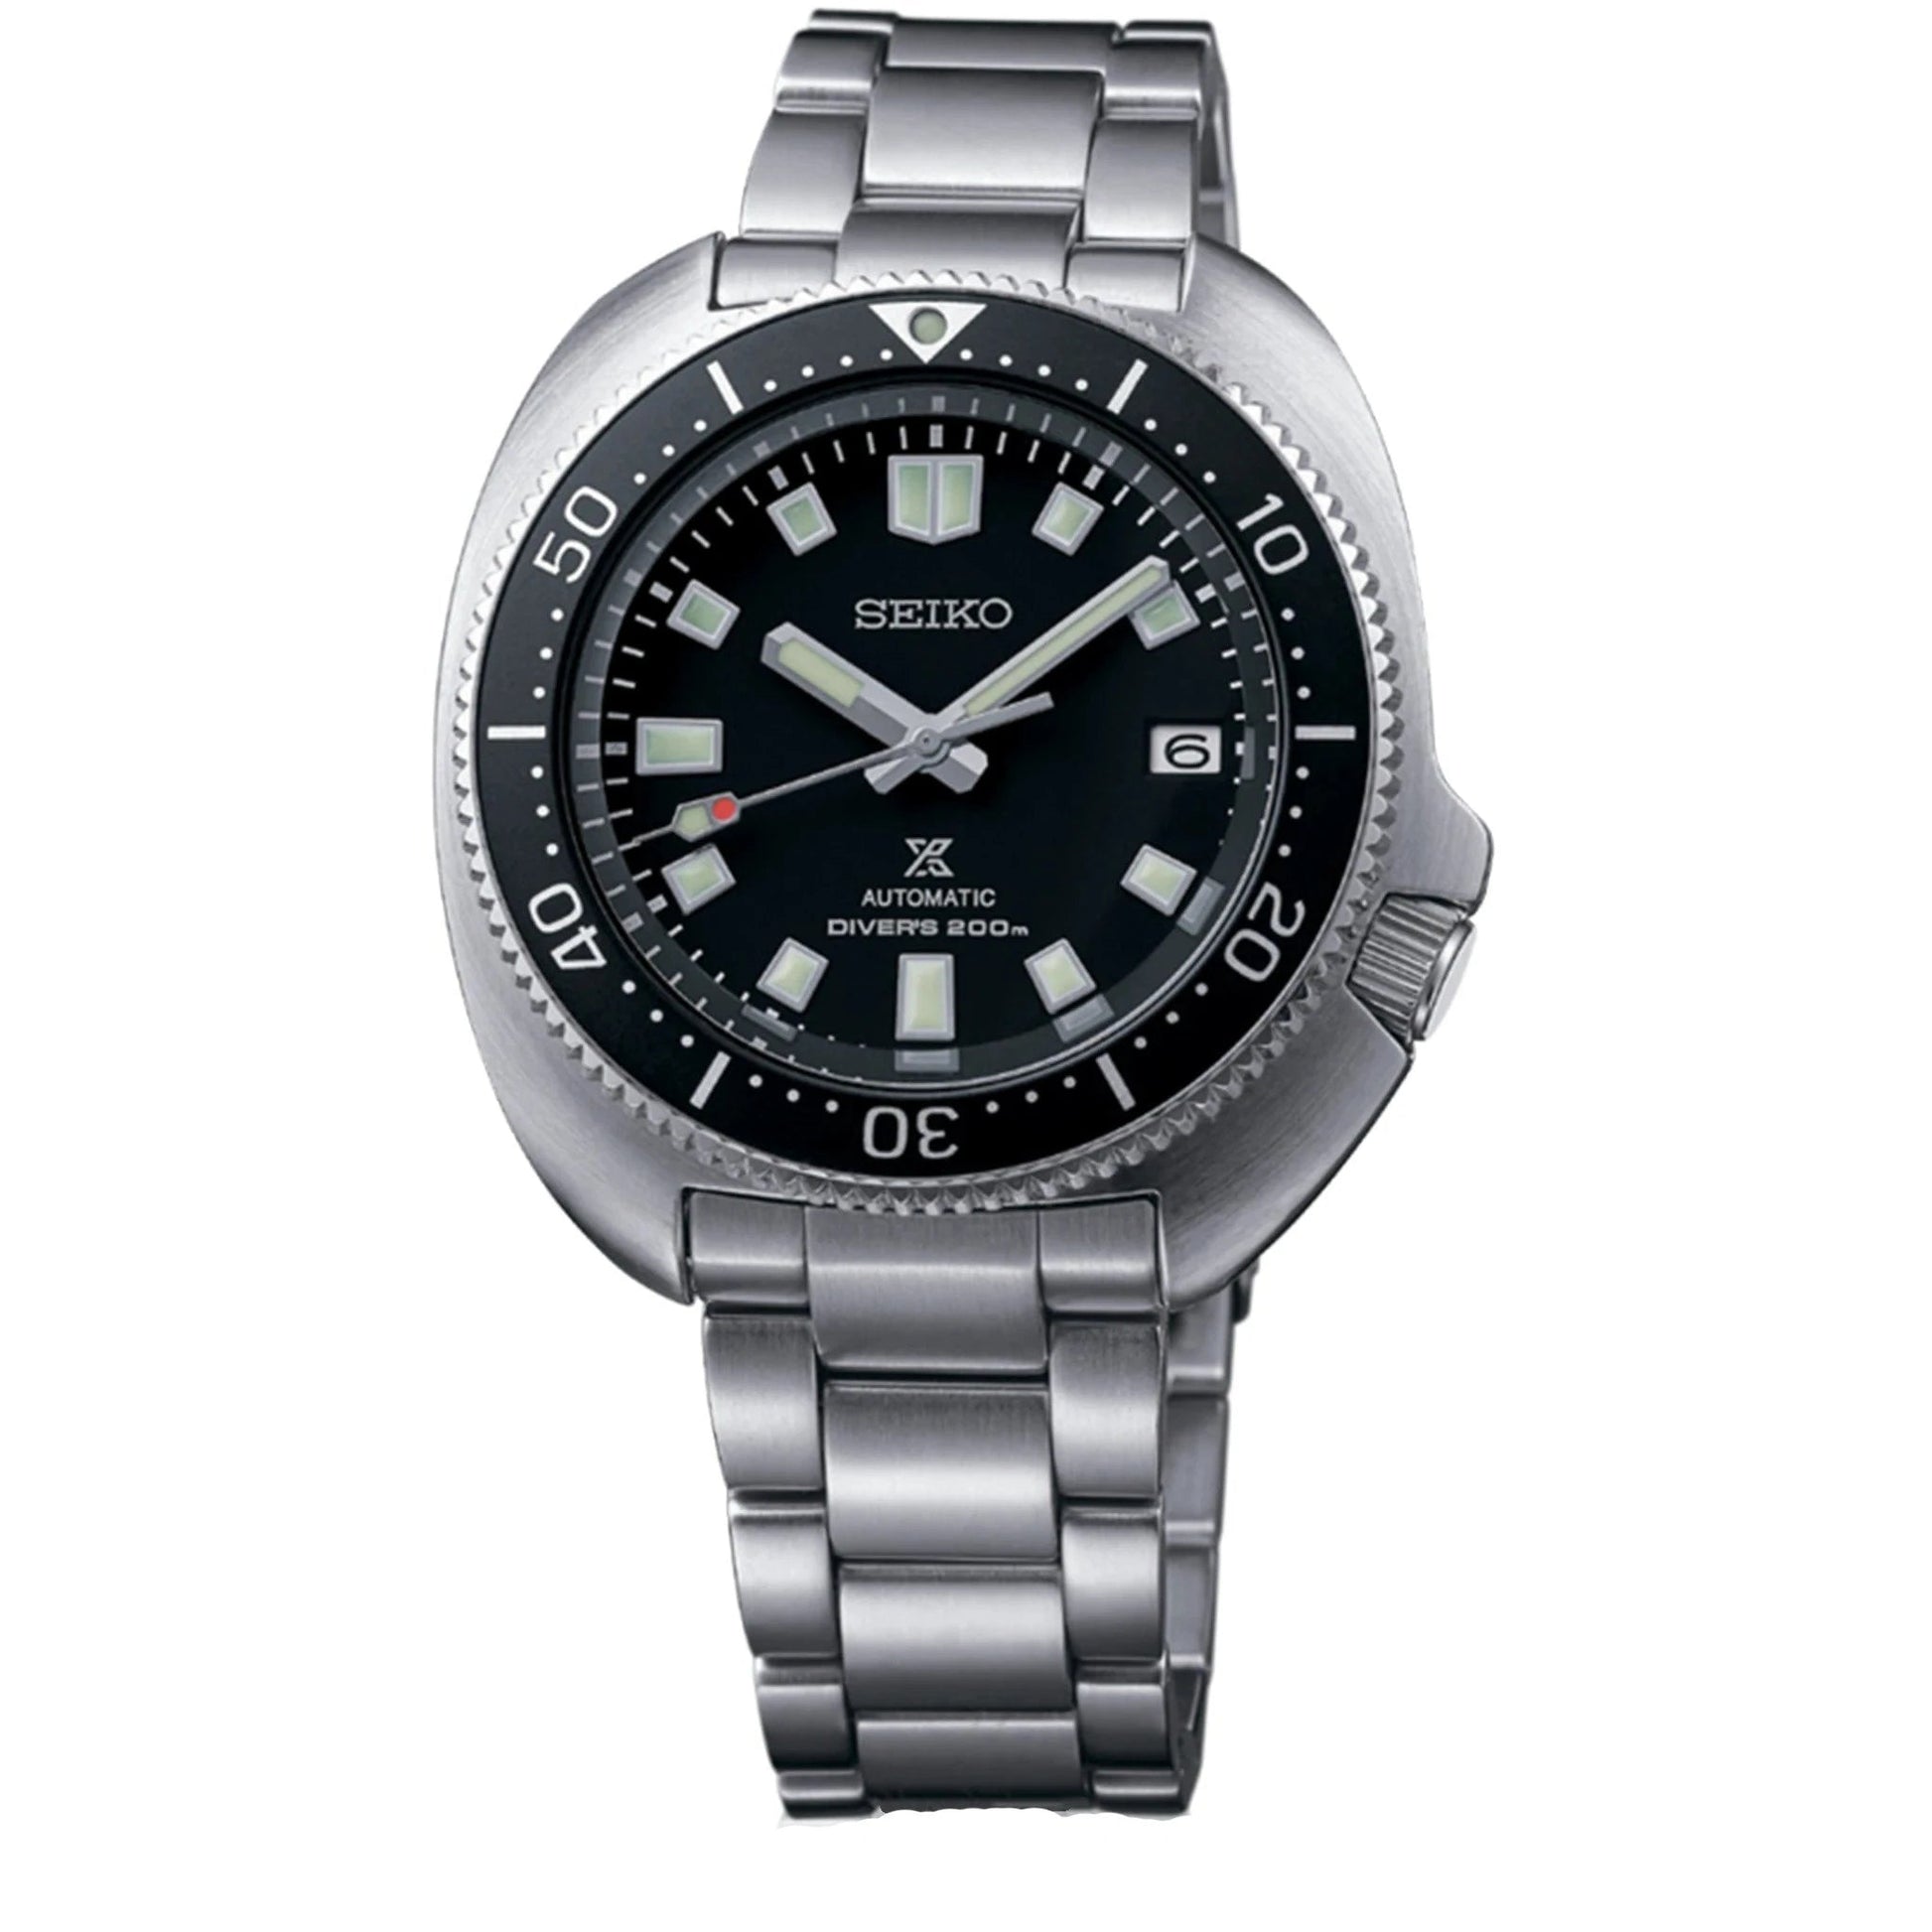 SEIKO SPB151 - Maple City Timepieces